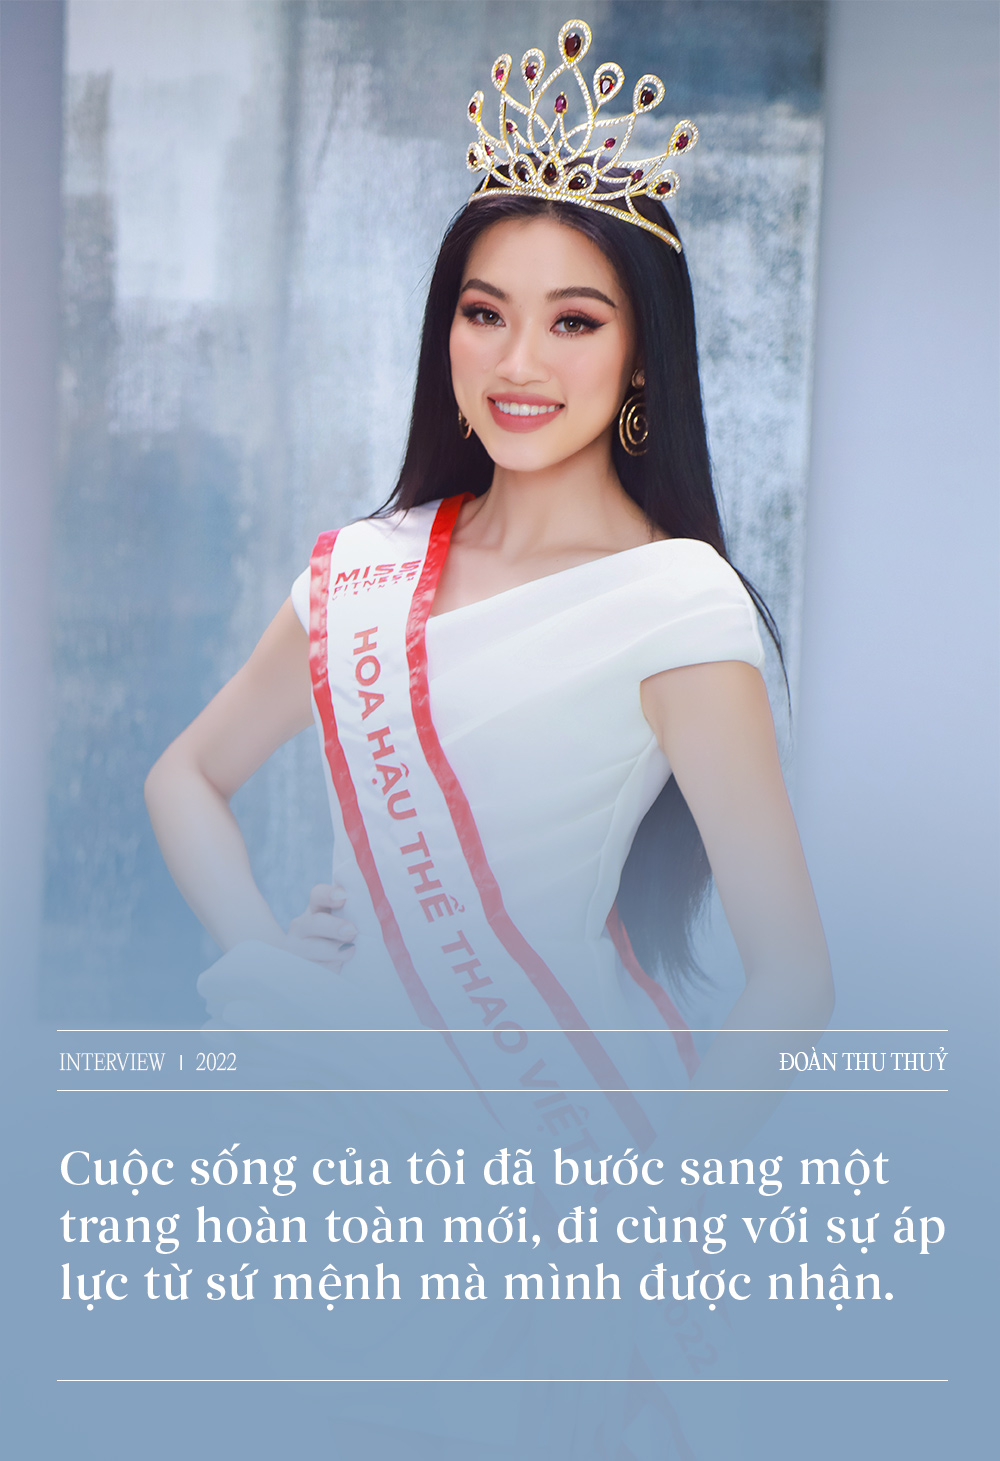 Giao lưu cùng Top 3 Hoa hậu Thể thao Việt Nam: Một lần nói rõ những lùm xùm hậu đăng quang, nhận xét thẳng thắn về Lê Bống  - Ảnh 2.